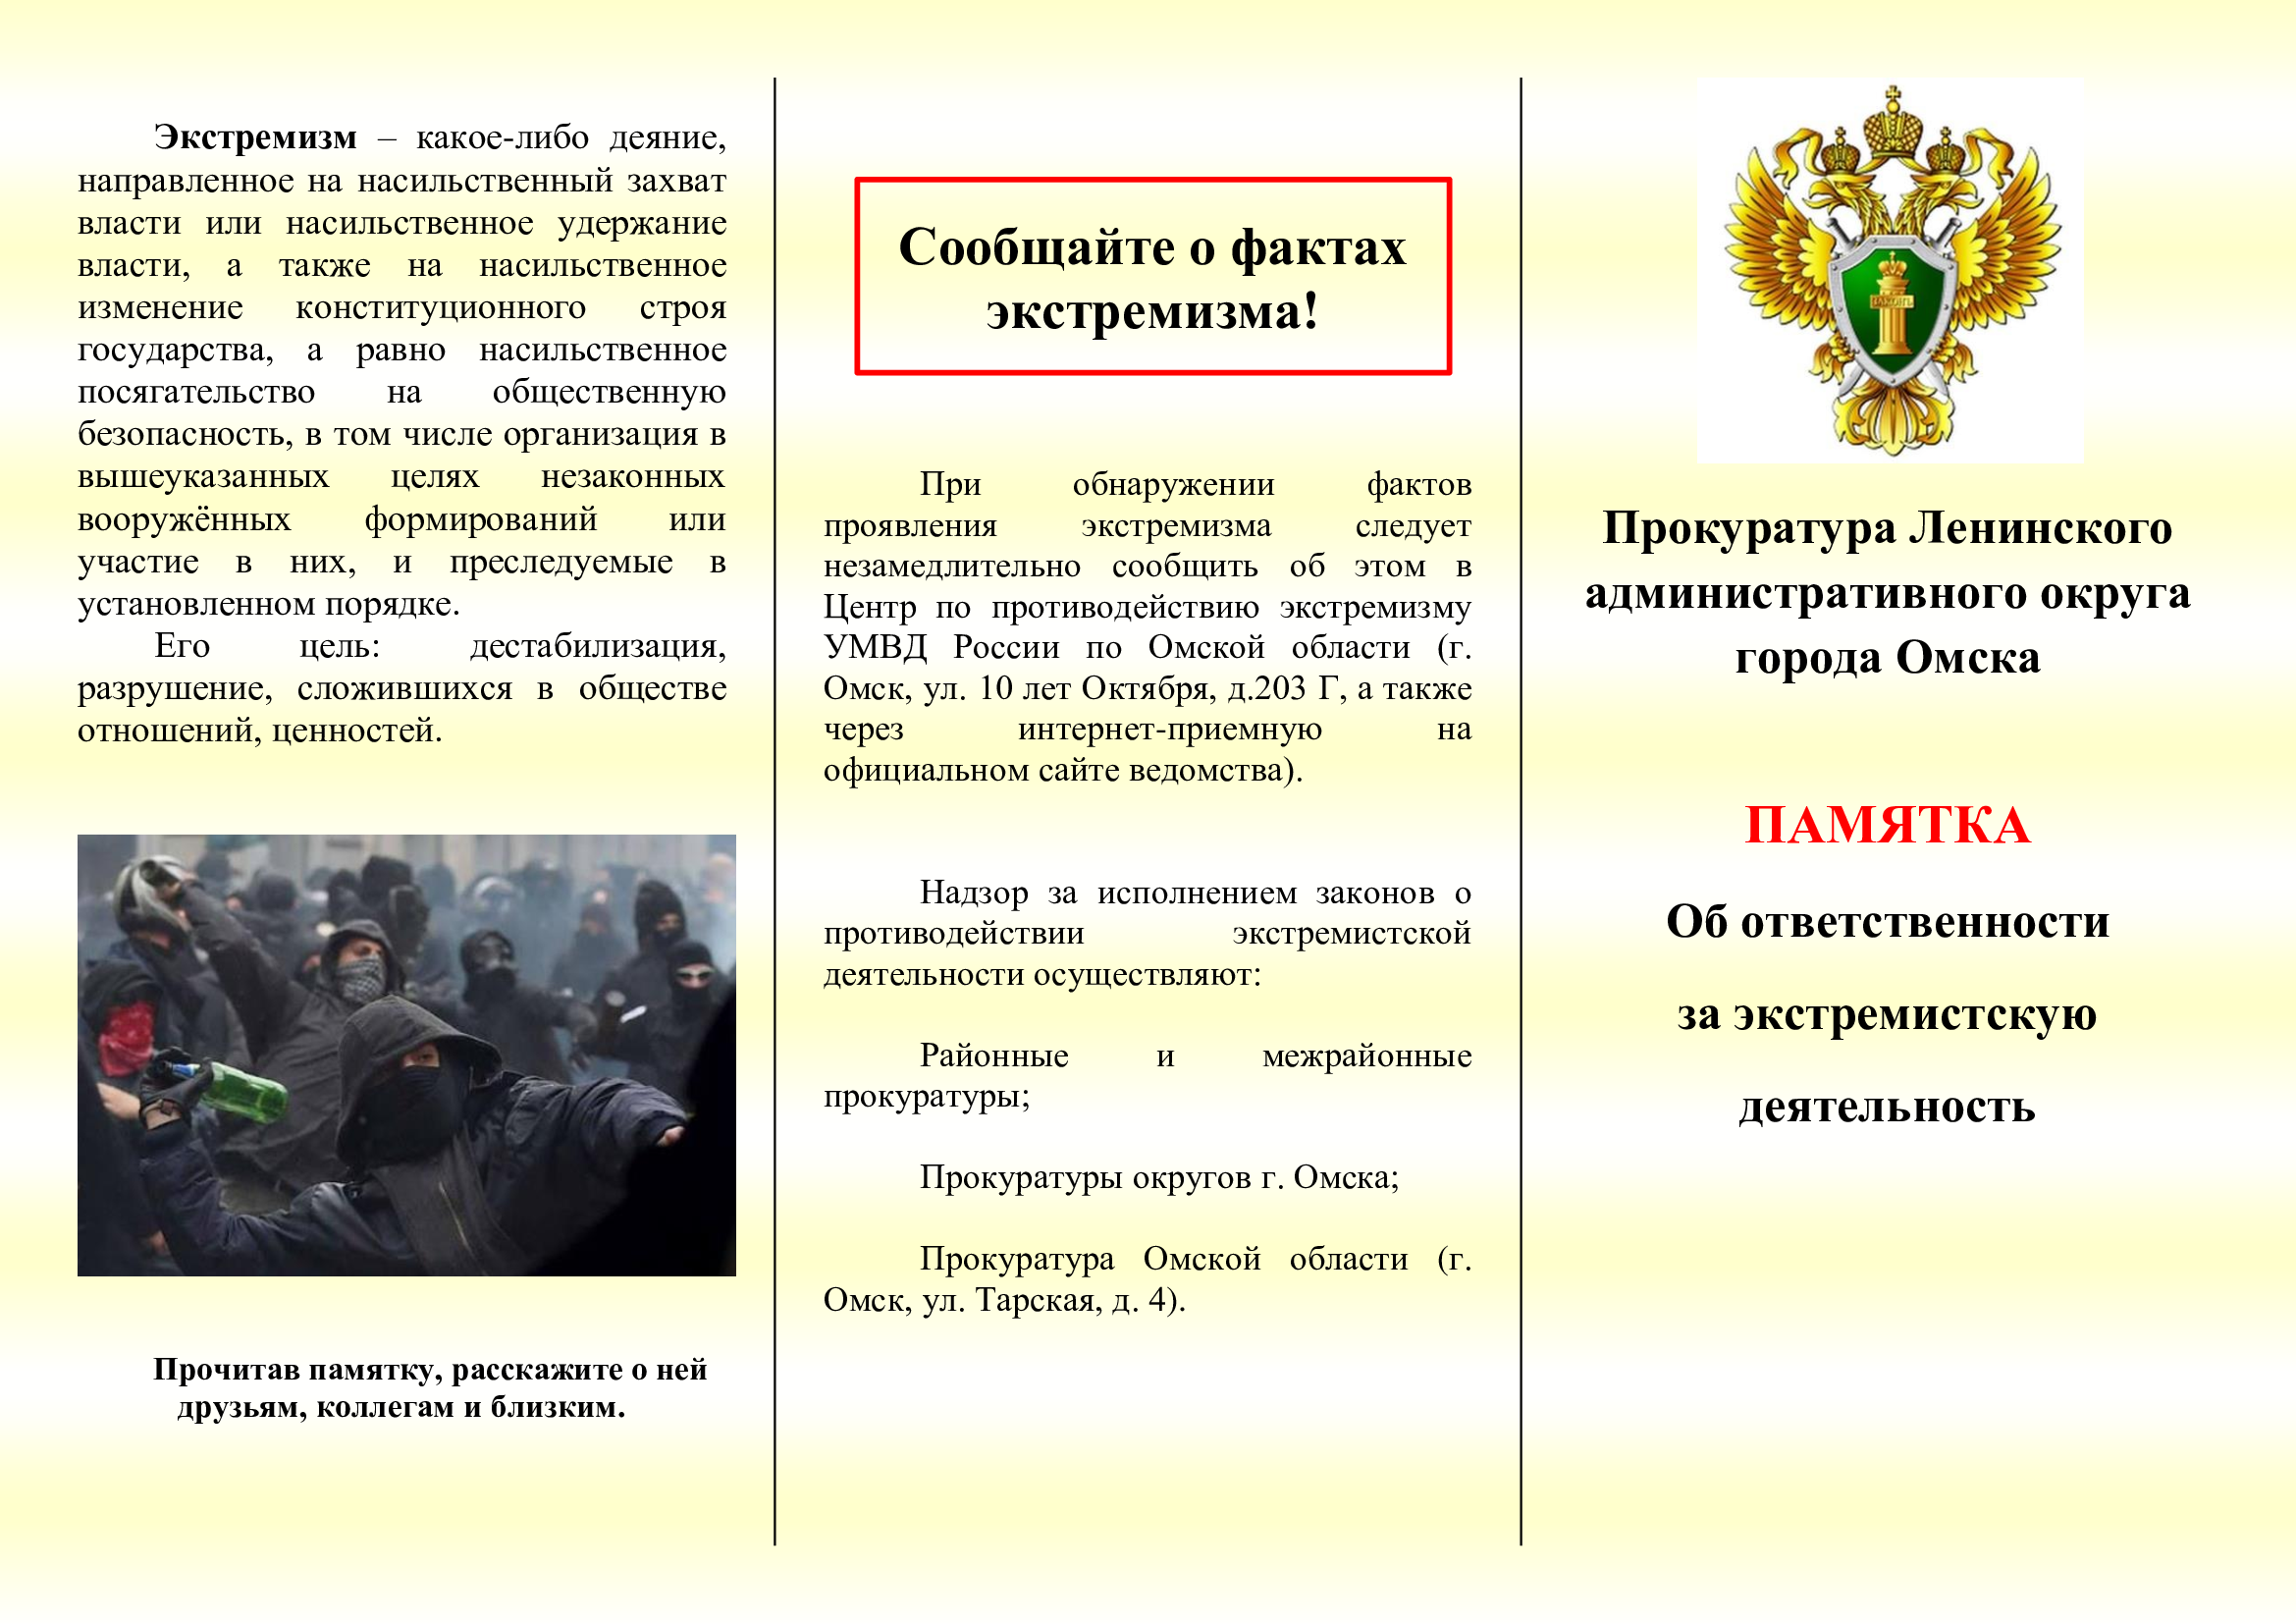 Прокуратура Ленинского административного округа города Омска информирует об ответственности за экстремистскую деятельность.